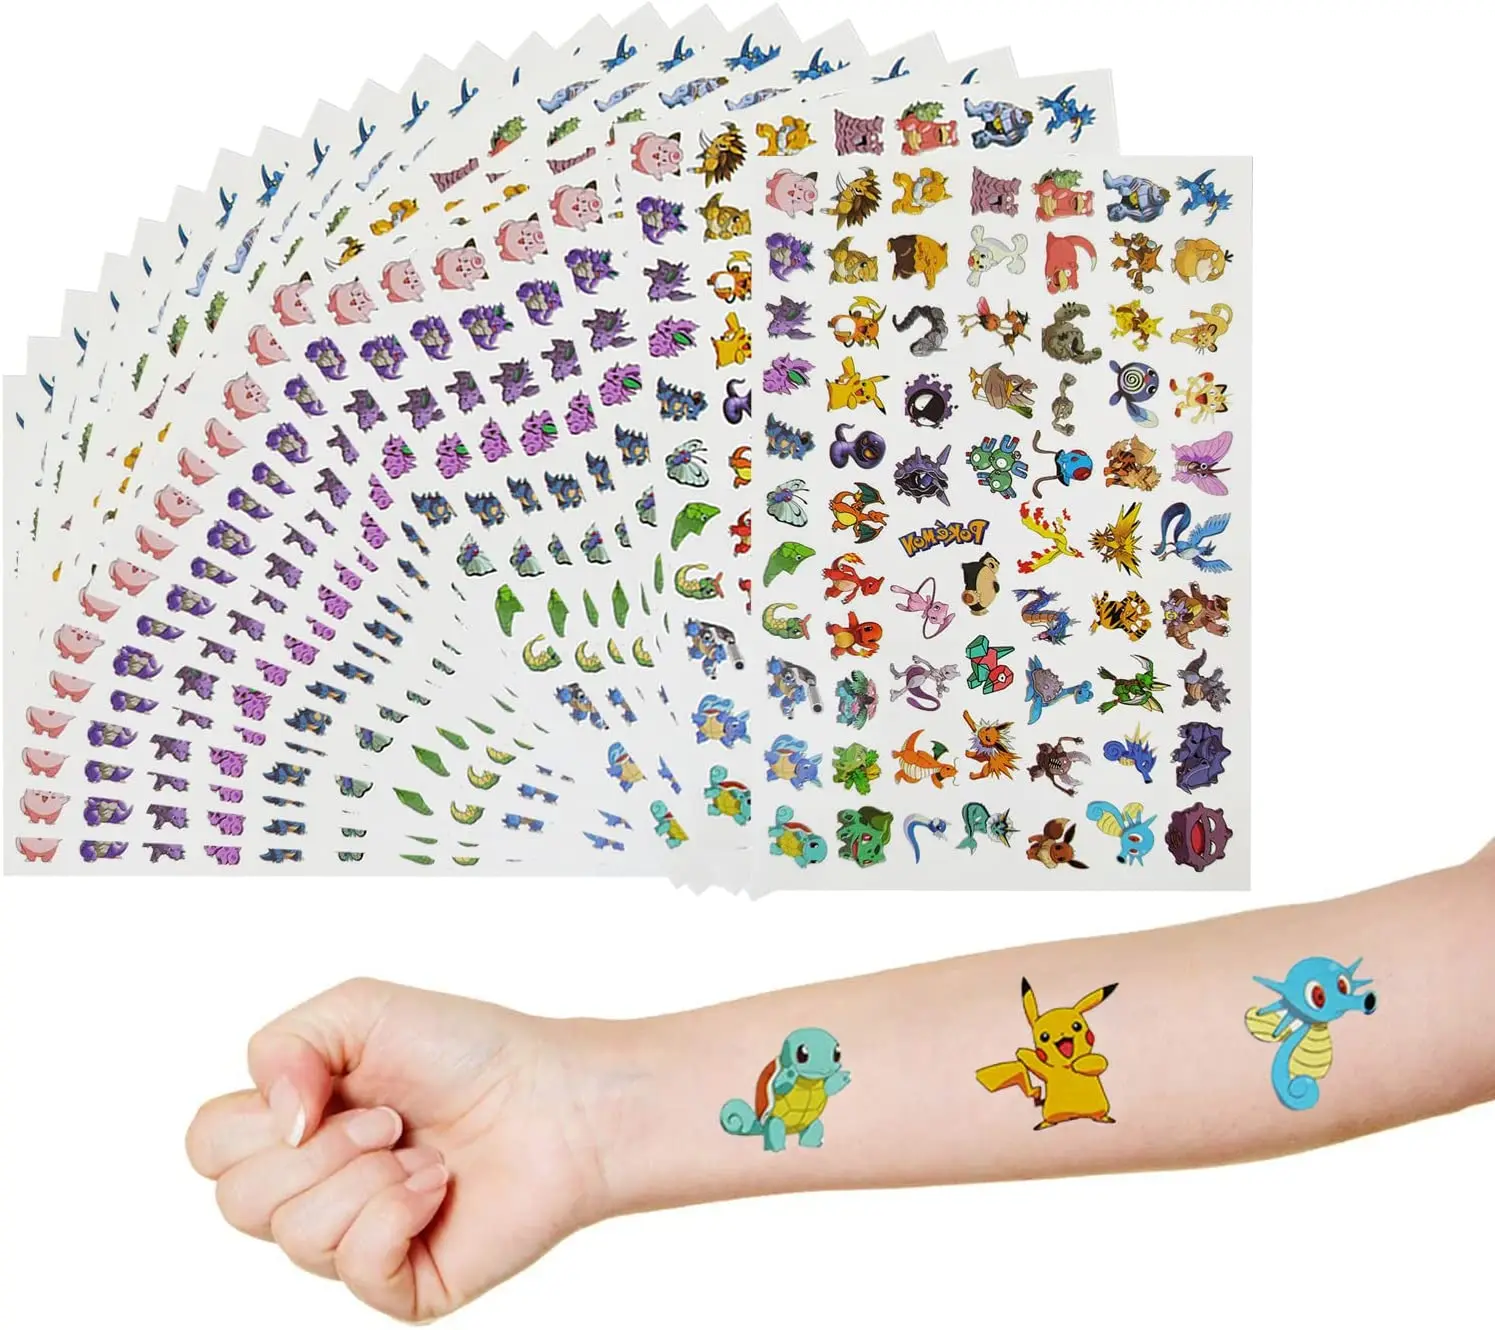 UPDATED 35 Pokemon Tattoos Roundup